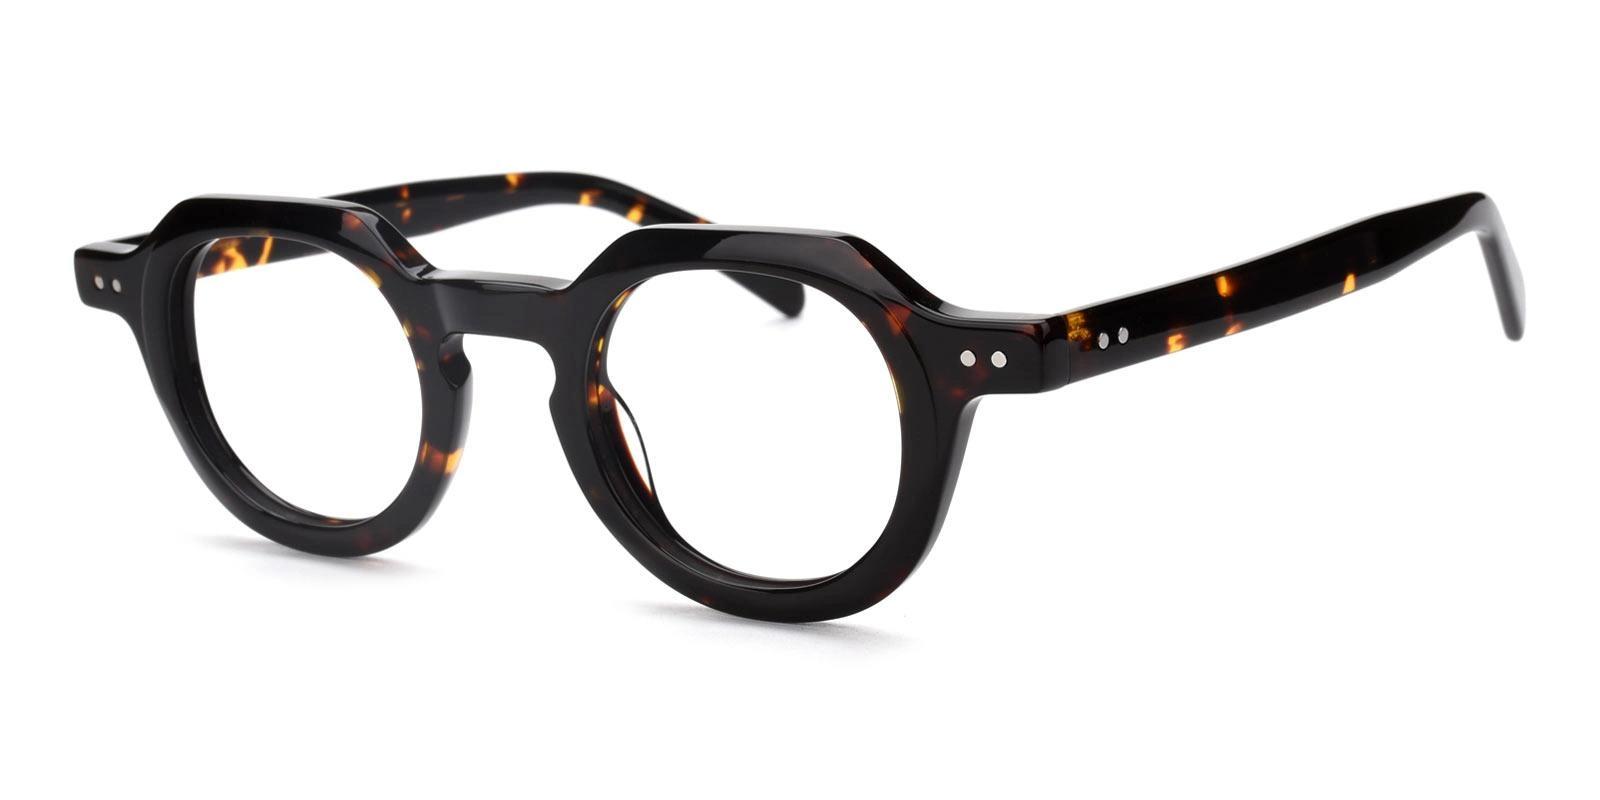 Fielduous Tortoise Acetate Eyeglasses , UniversalBridgeFit Frames from ABBE Glasses